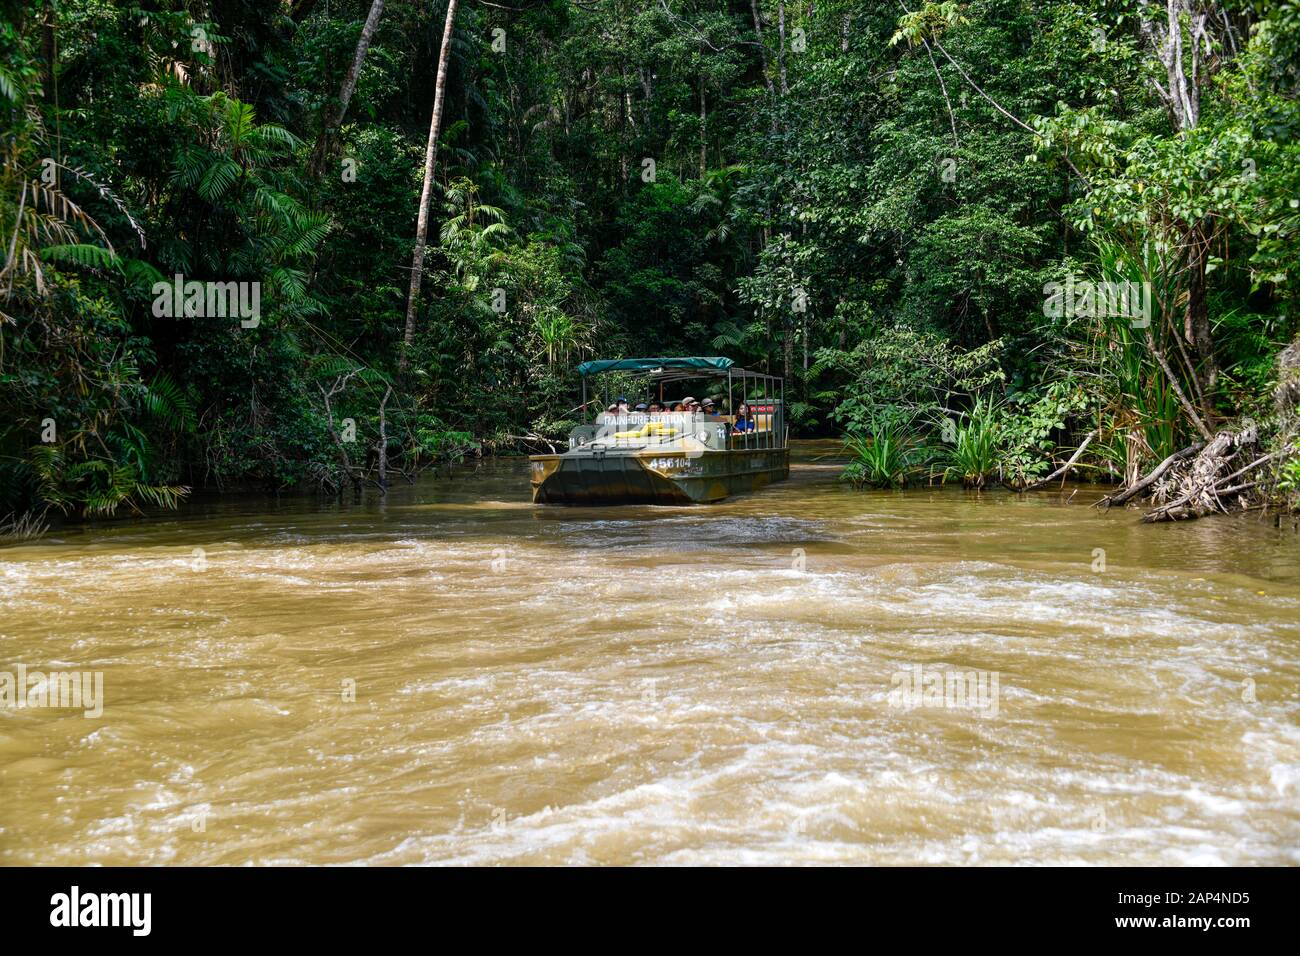 GMC Chevrolet DUKW veicolo anfibio a sei ruote motrici in acqua con turisti nella foresta pluviale Foto Stock